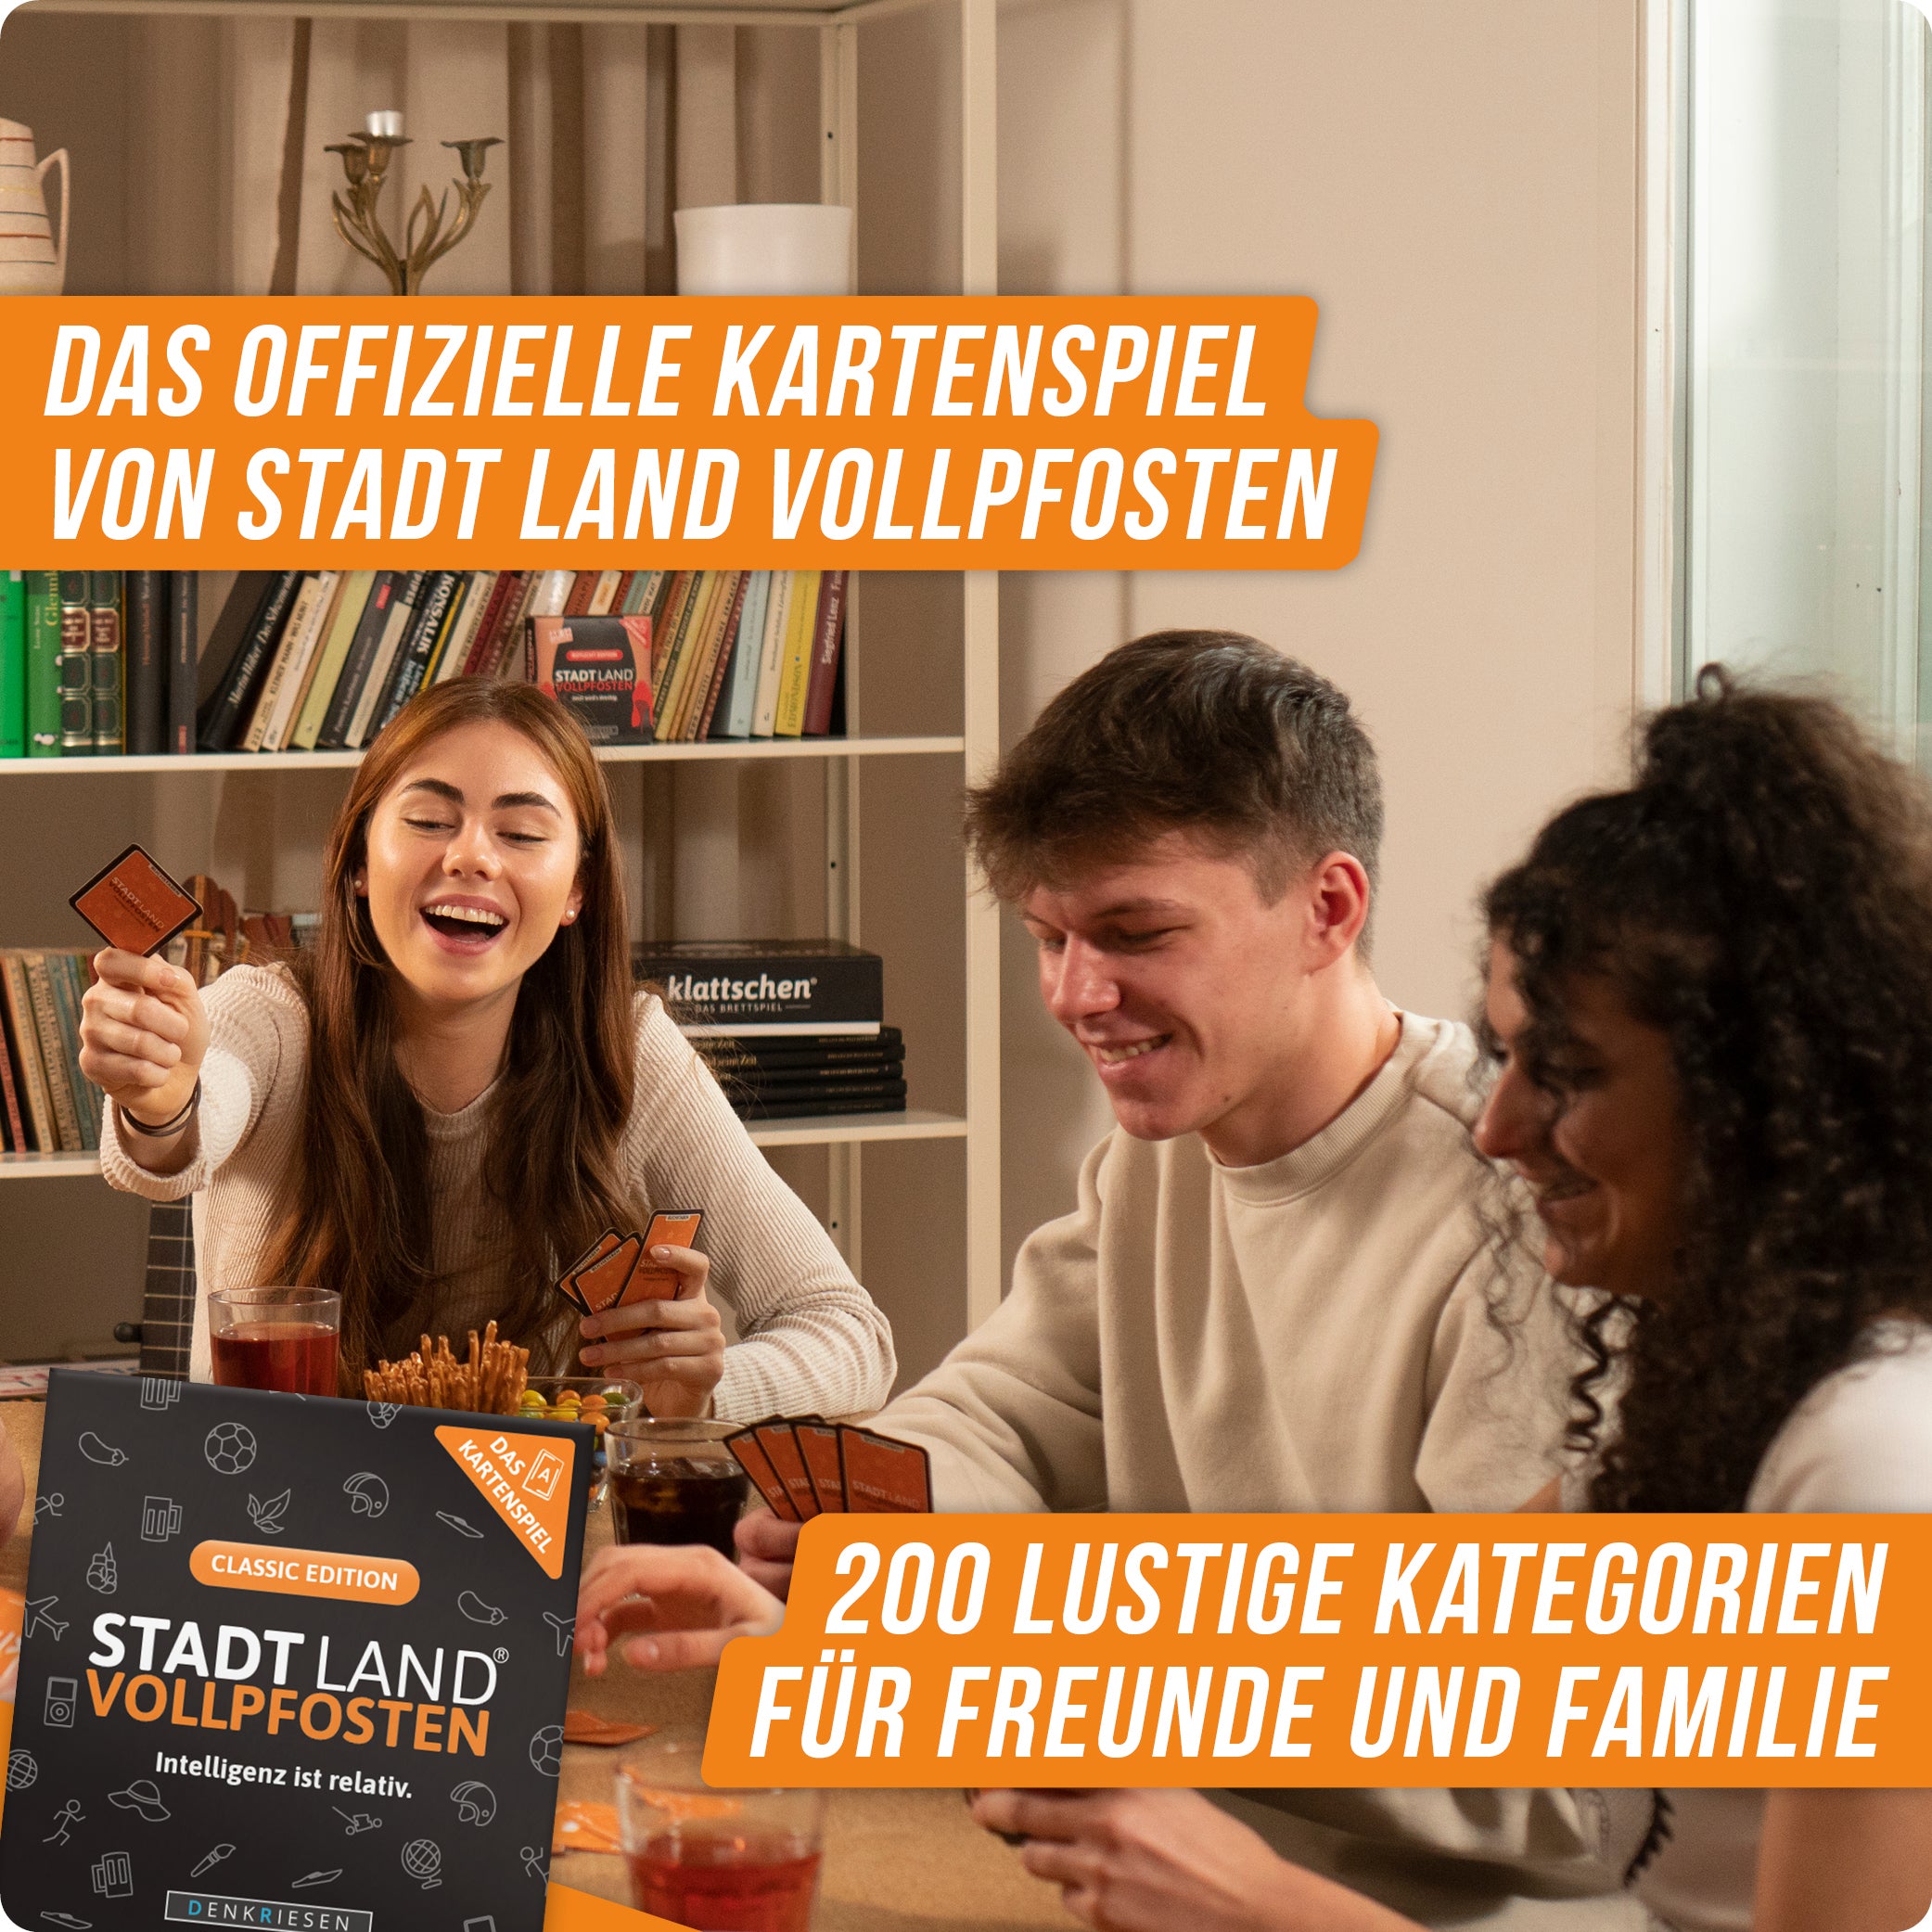 Spar-Set Christina - JAMMERLAPPEN + STADT-LAND VOLLPFOSTEN Kartenspiel Classic Edition